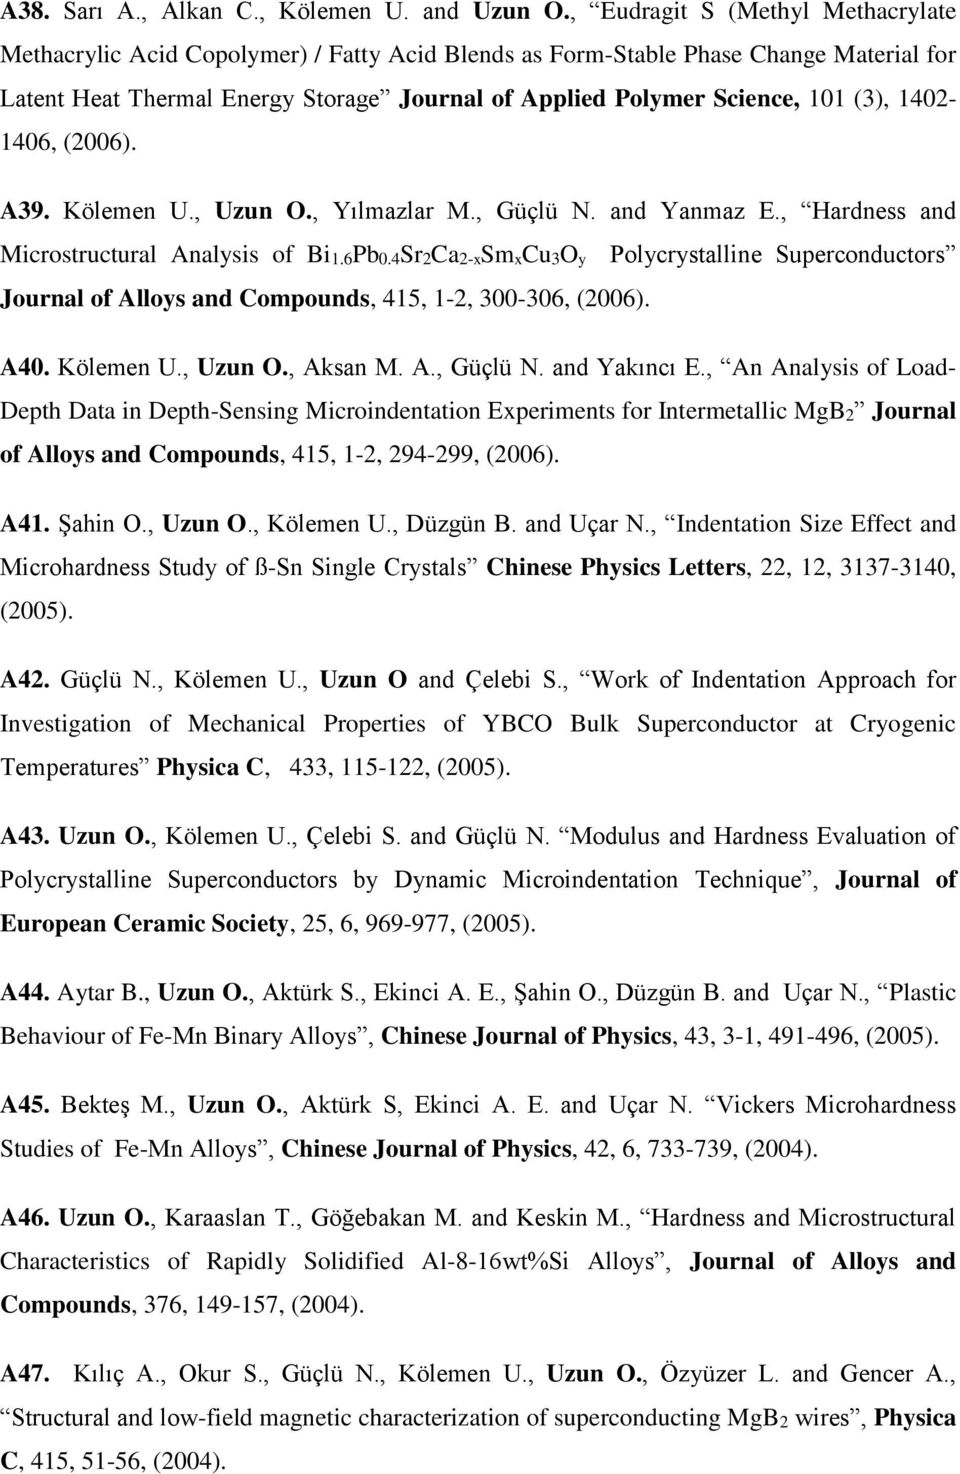 (3), 1402-1406, (2006). A39. Kölemen U., Uzun O., Yılmazlar M., Güçlü N. and Yanmaz E., Hardness and Microstructural Analysis of Bi1.6Pb0.